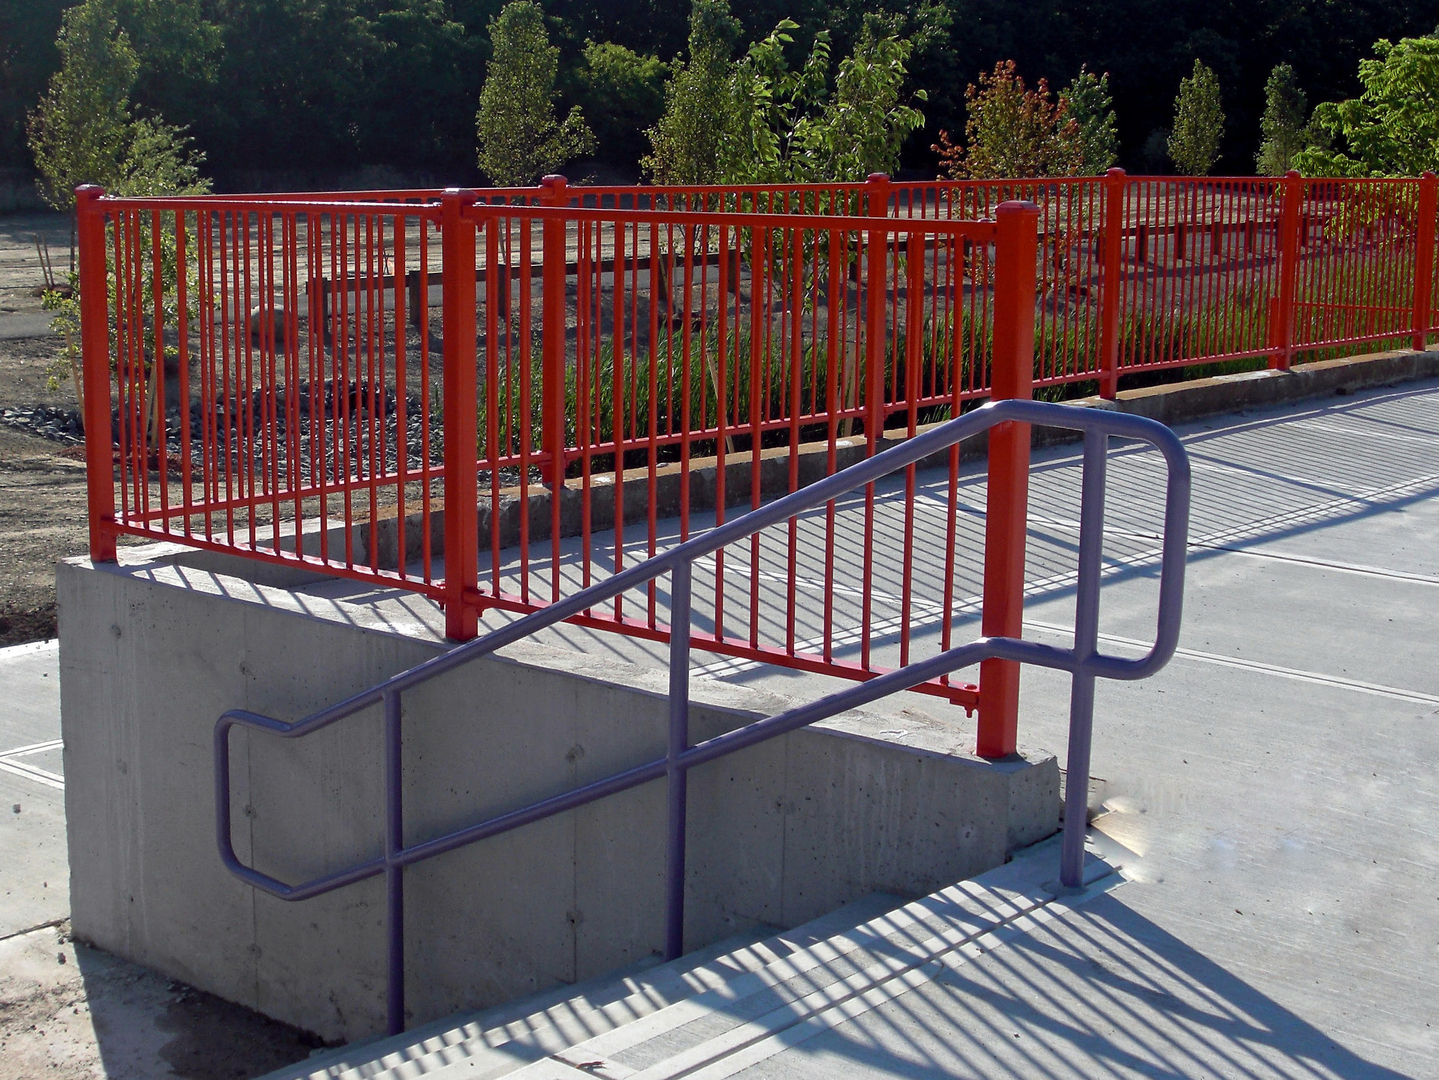 Orange railing work with steel holder